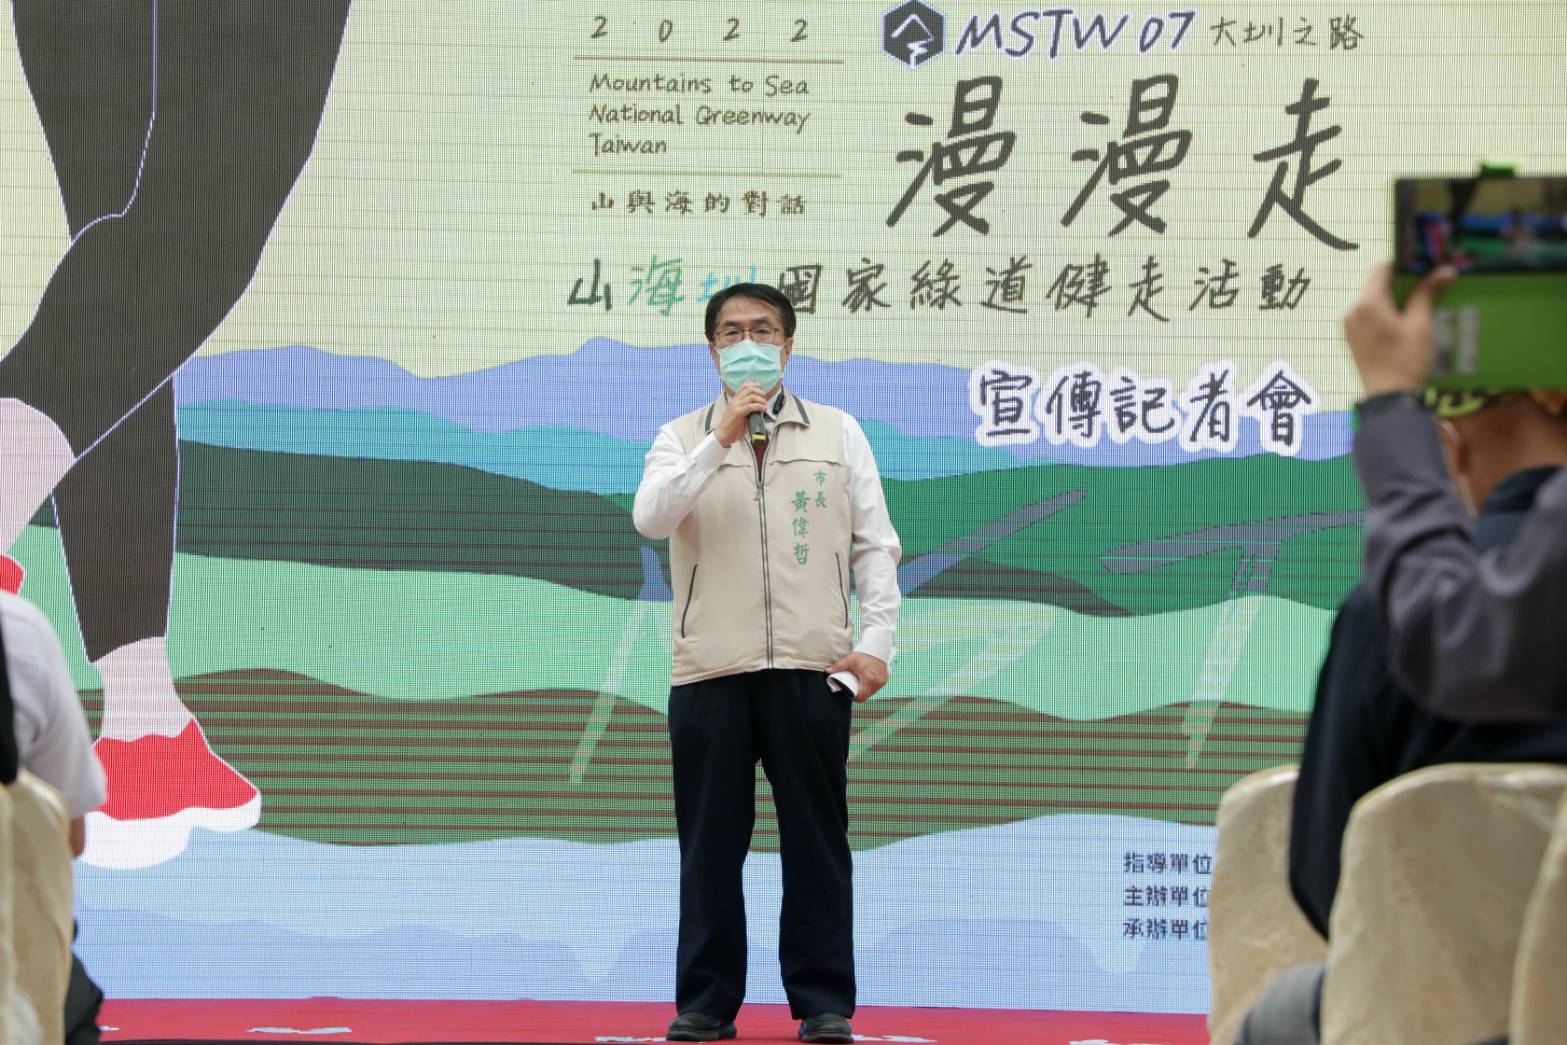 「山海圳國家綠道健走活動」名額爆滿  府邀民眾體驗綠道風光